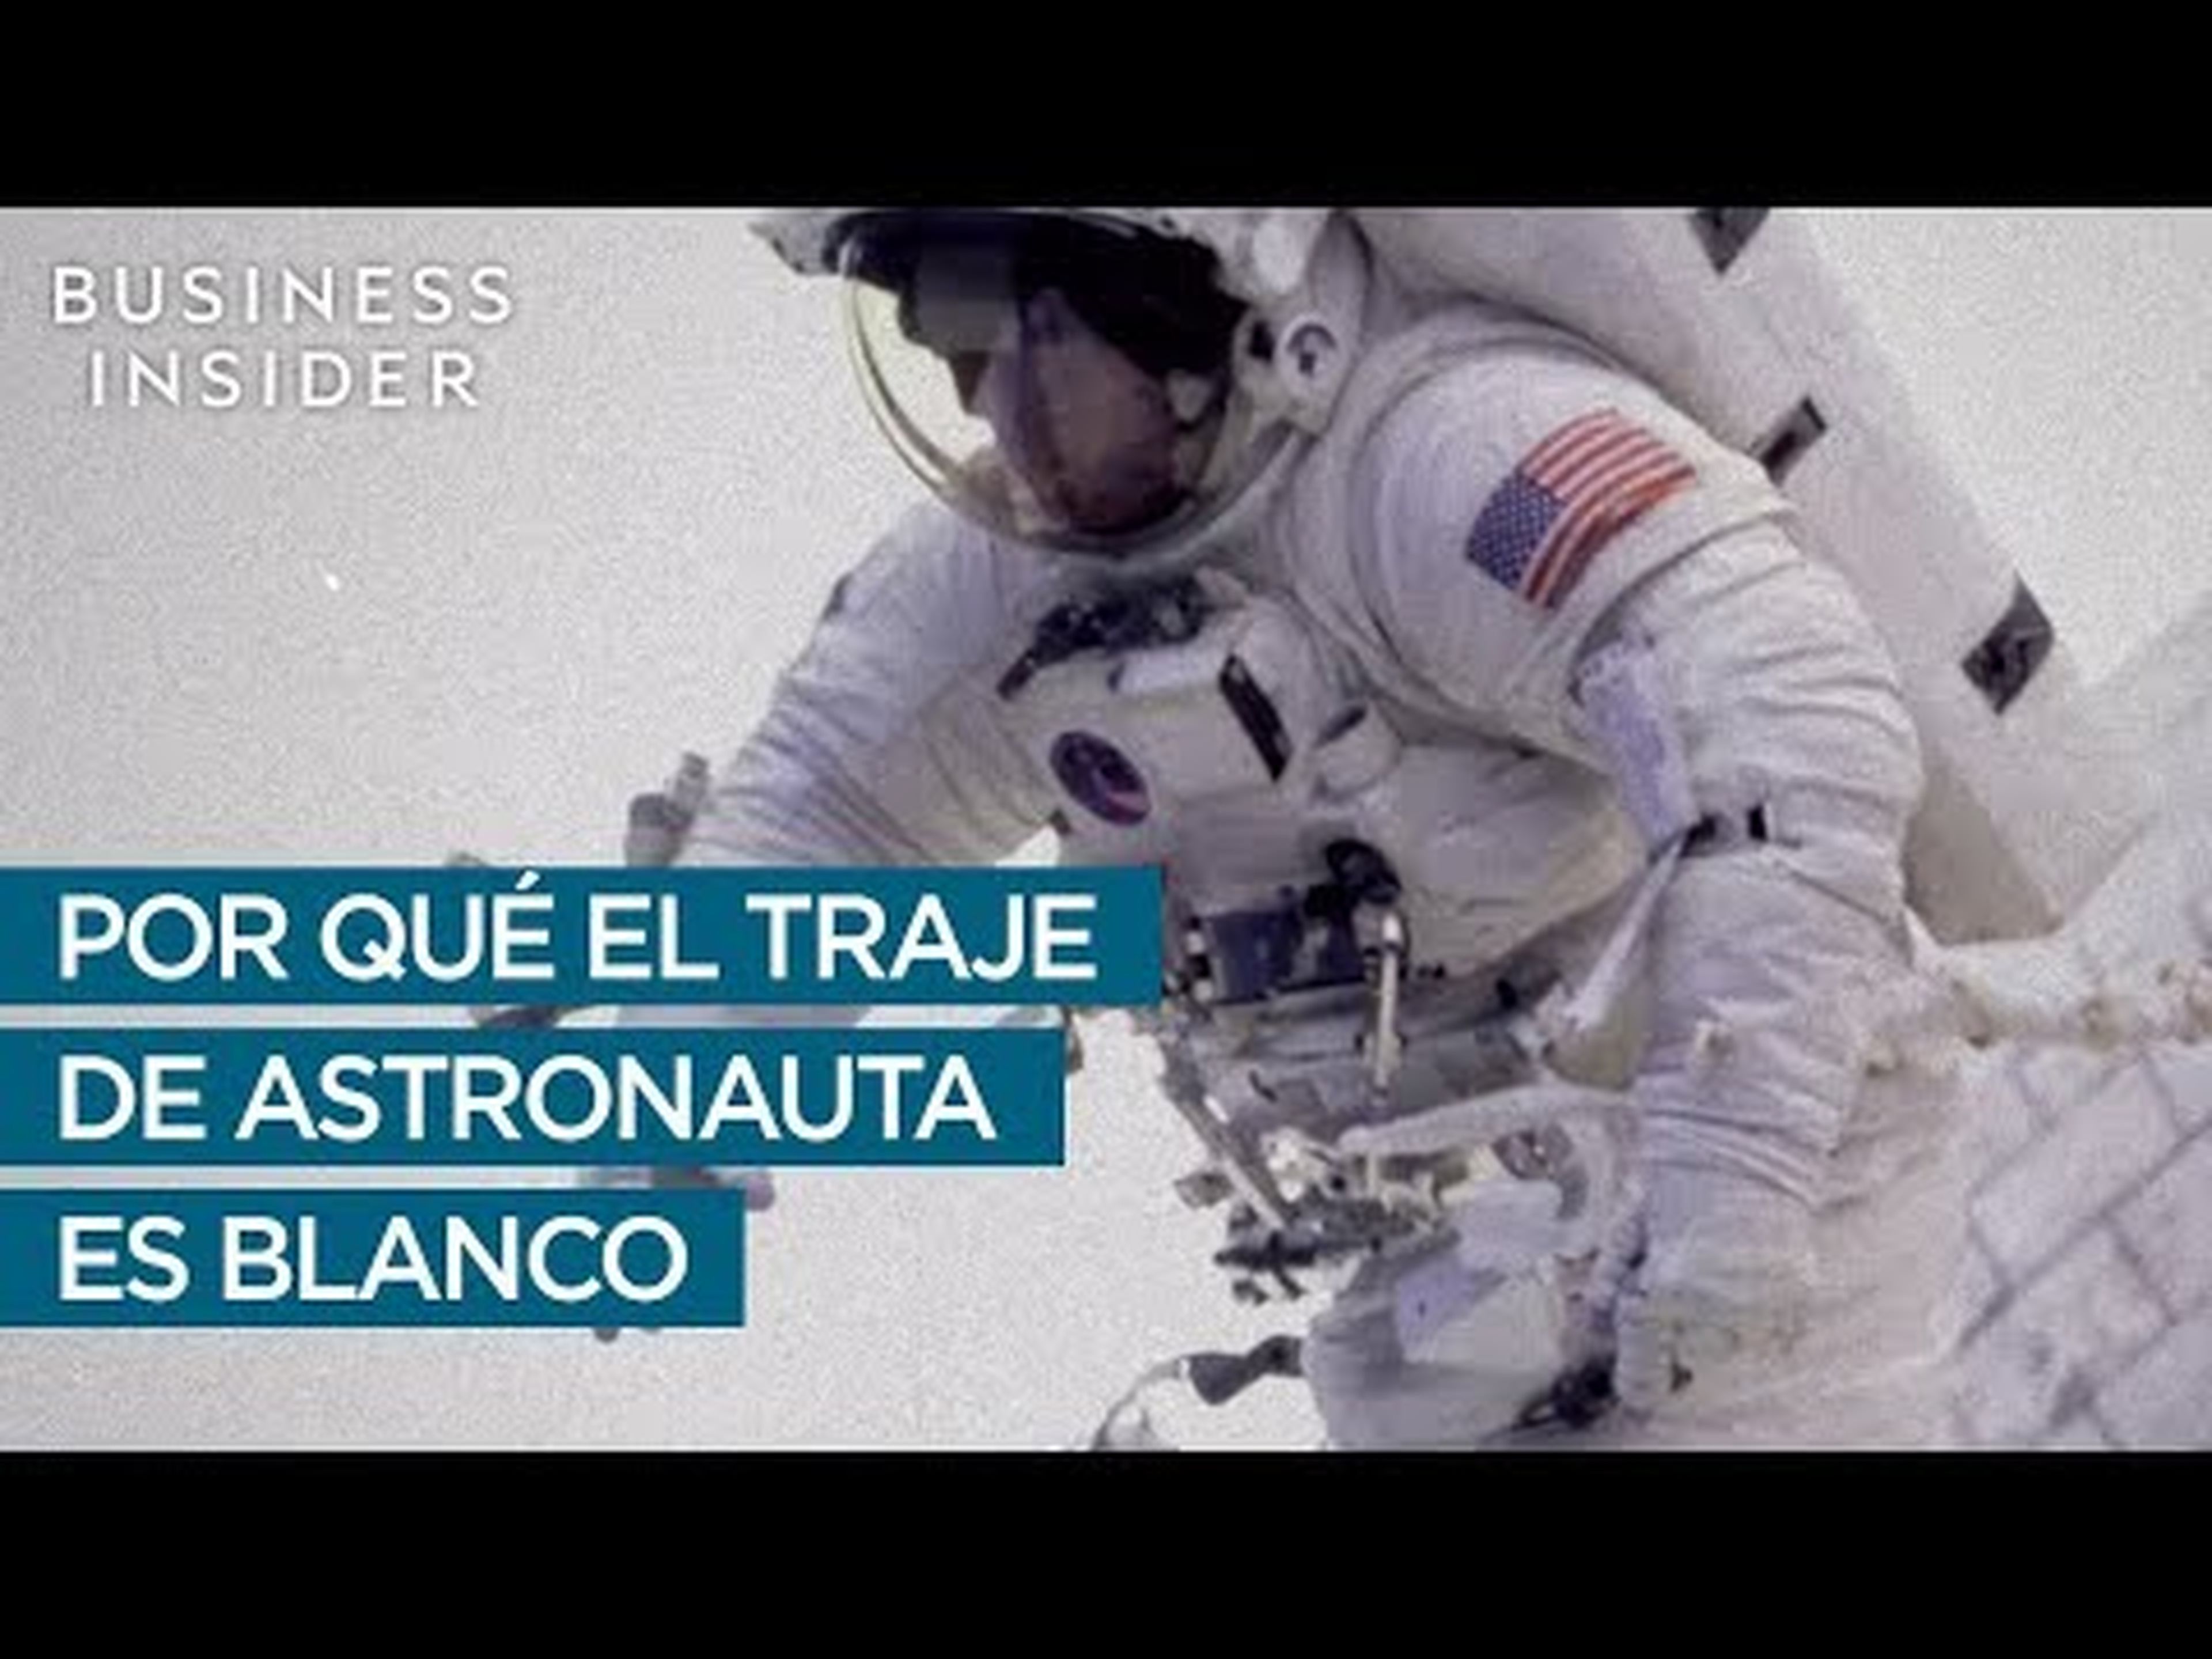 ¿Por qué los astronautas visten de blanco?